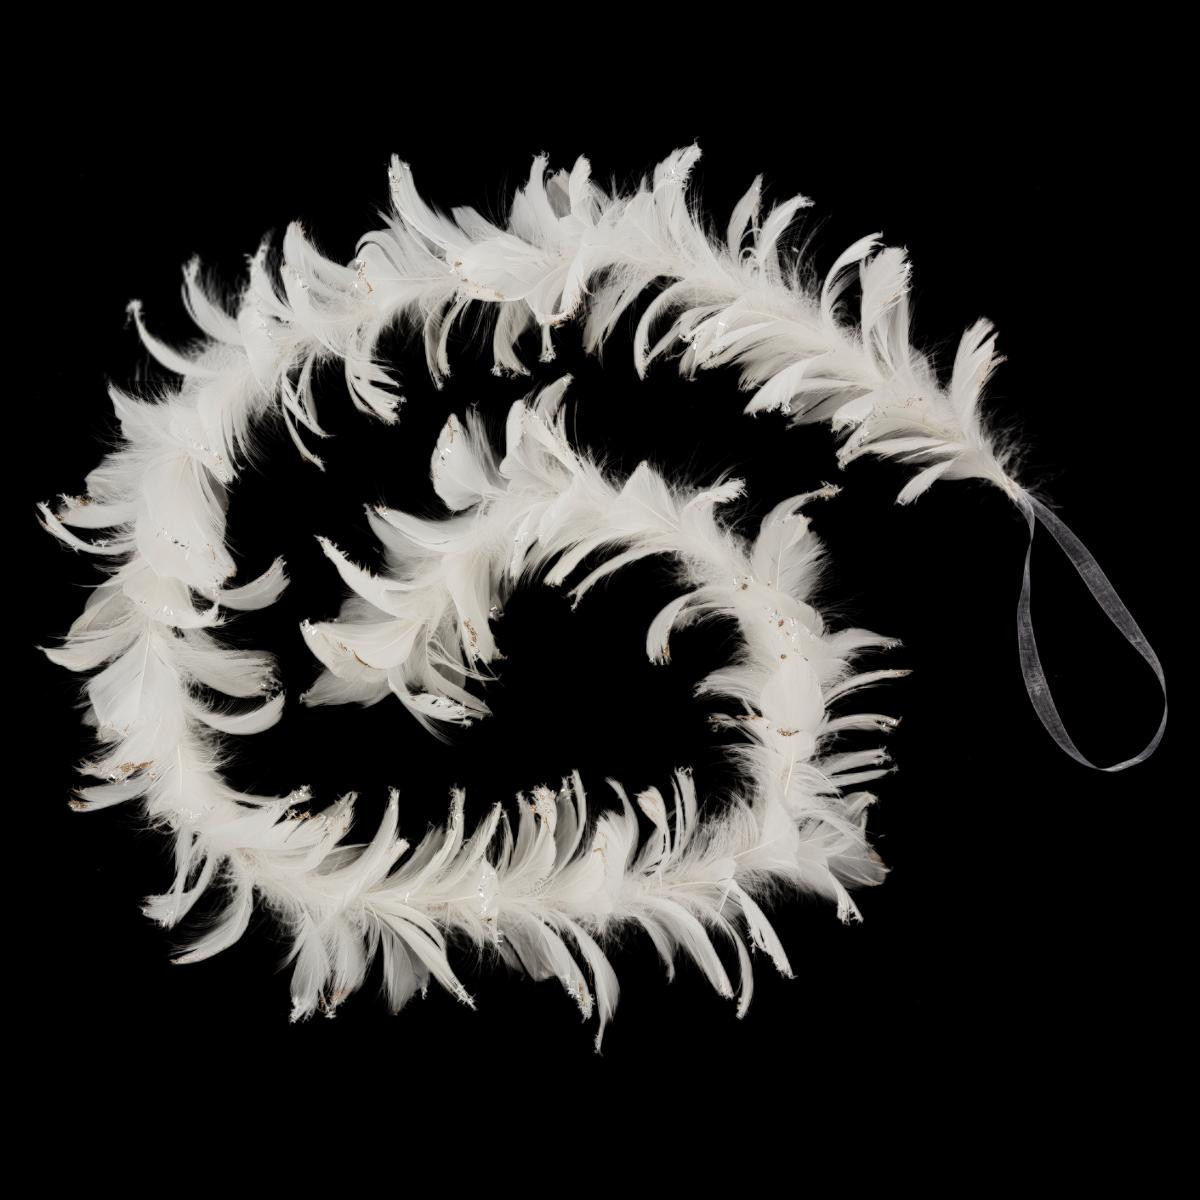 Petit Ange blanc en résine 8.5 x 11 cm - Objets de décoration et rangement  noël - Décomania